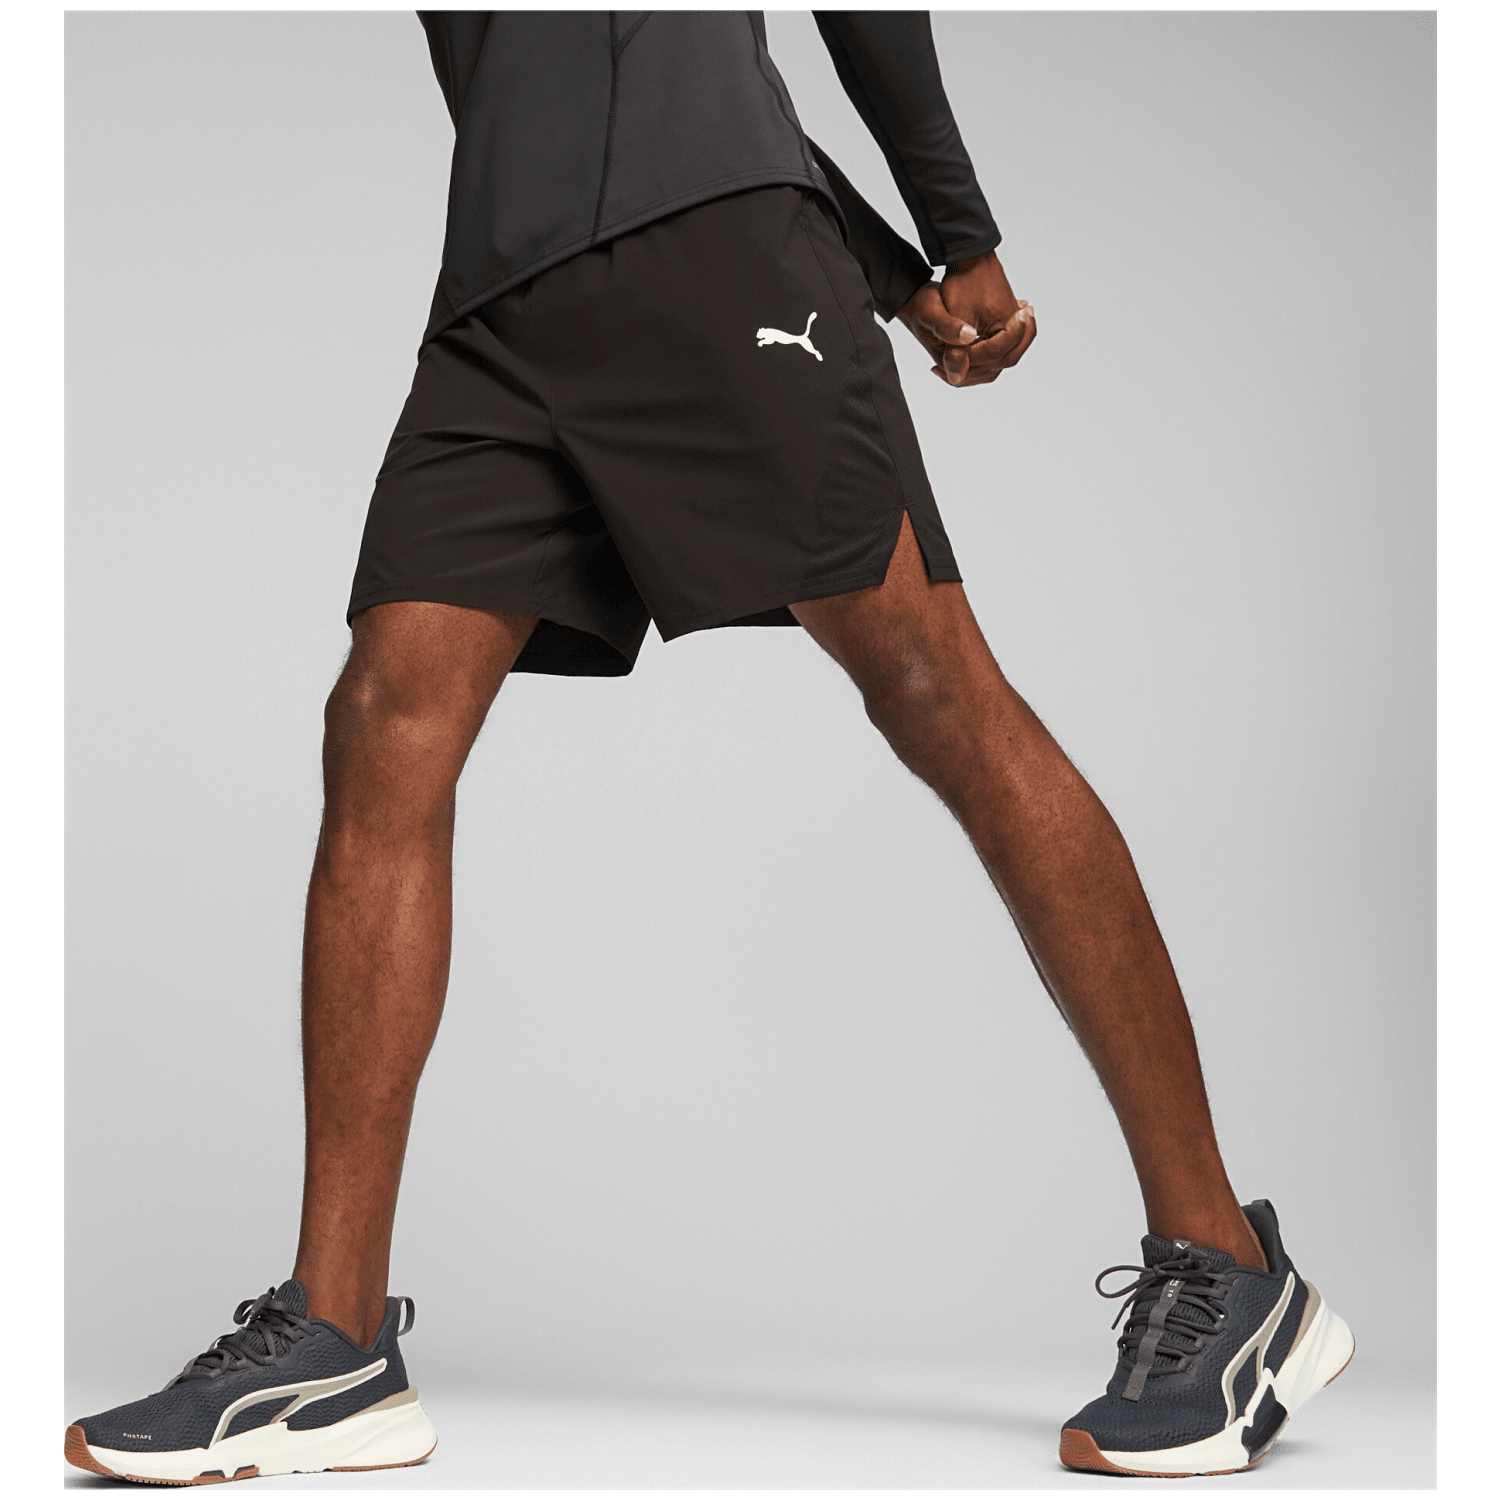 Puma Fit Ultrabreathe 7" Woven Herren Shorts